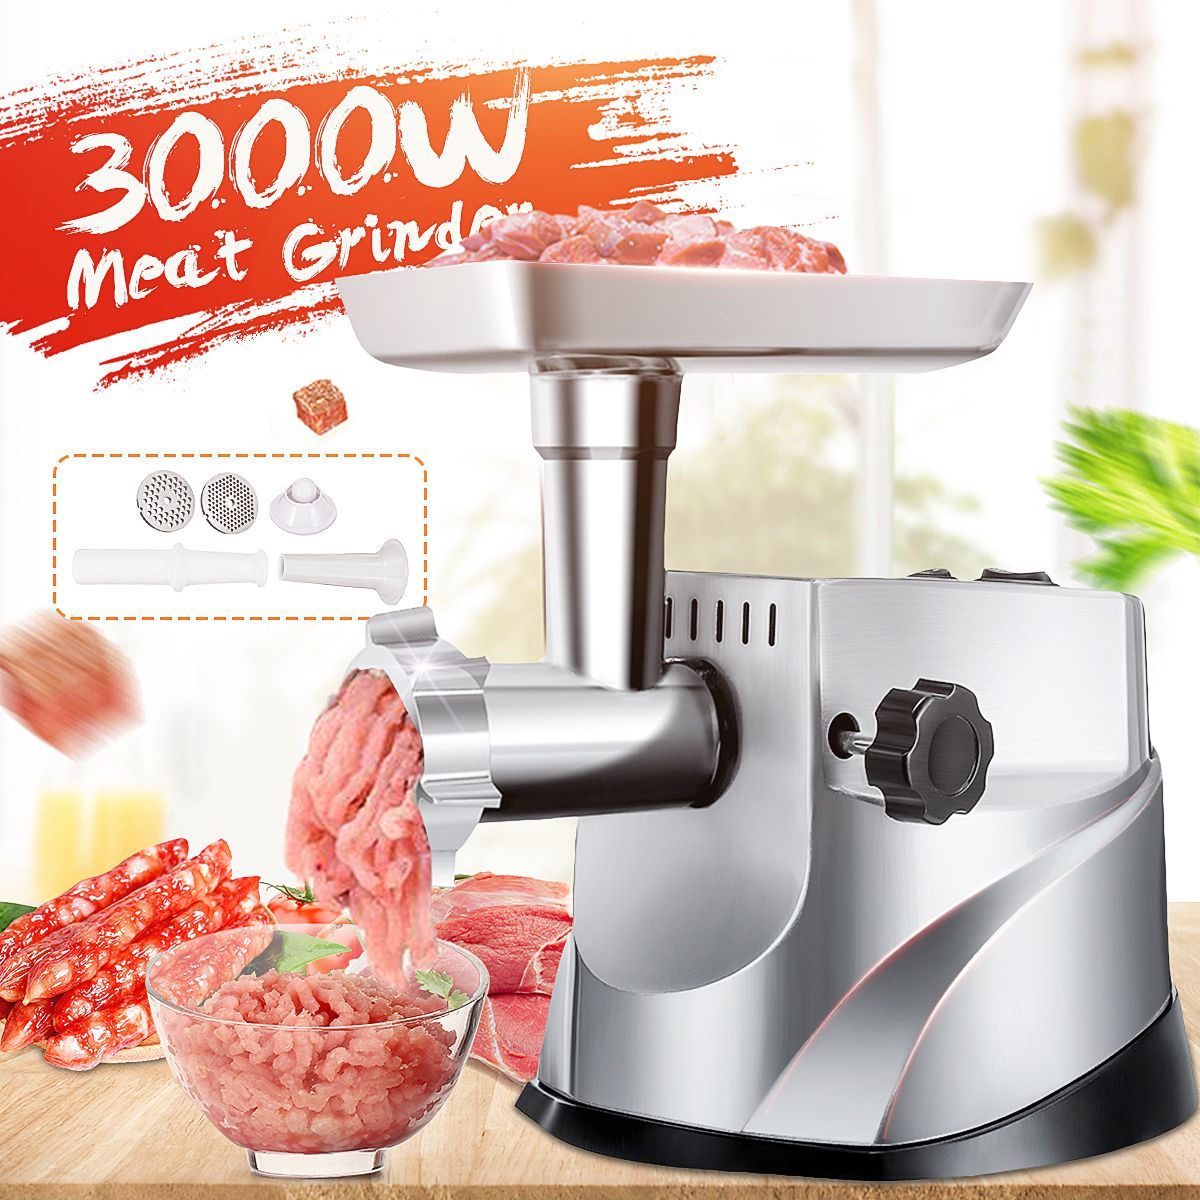 3000W-220V-Electric-Meat-Grinder-Sausage-Stuffer-Maker-Mincer-Filler-Household-Multifunctional-1661200